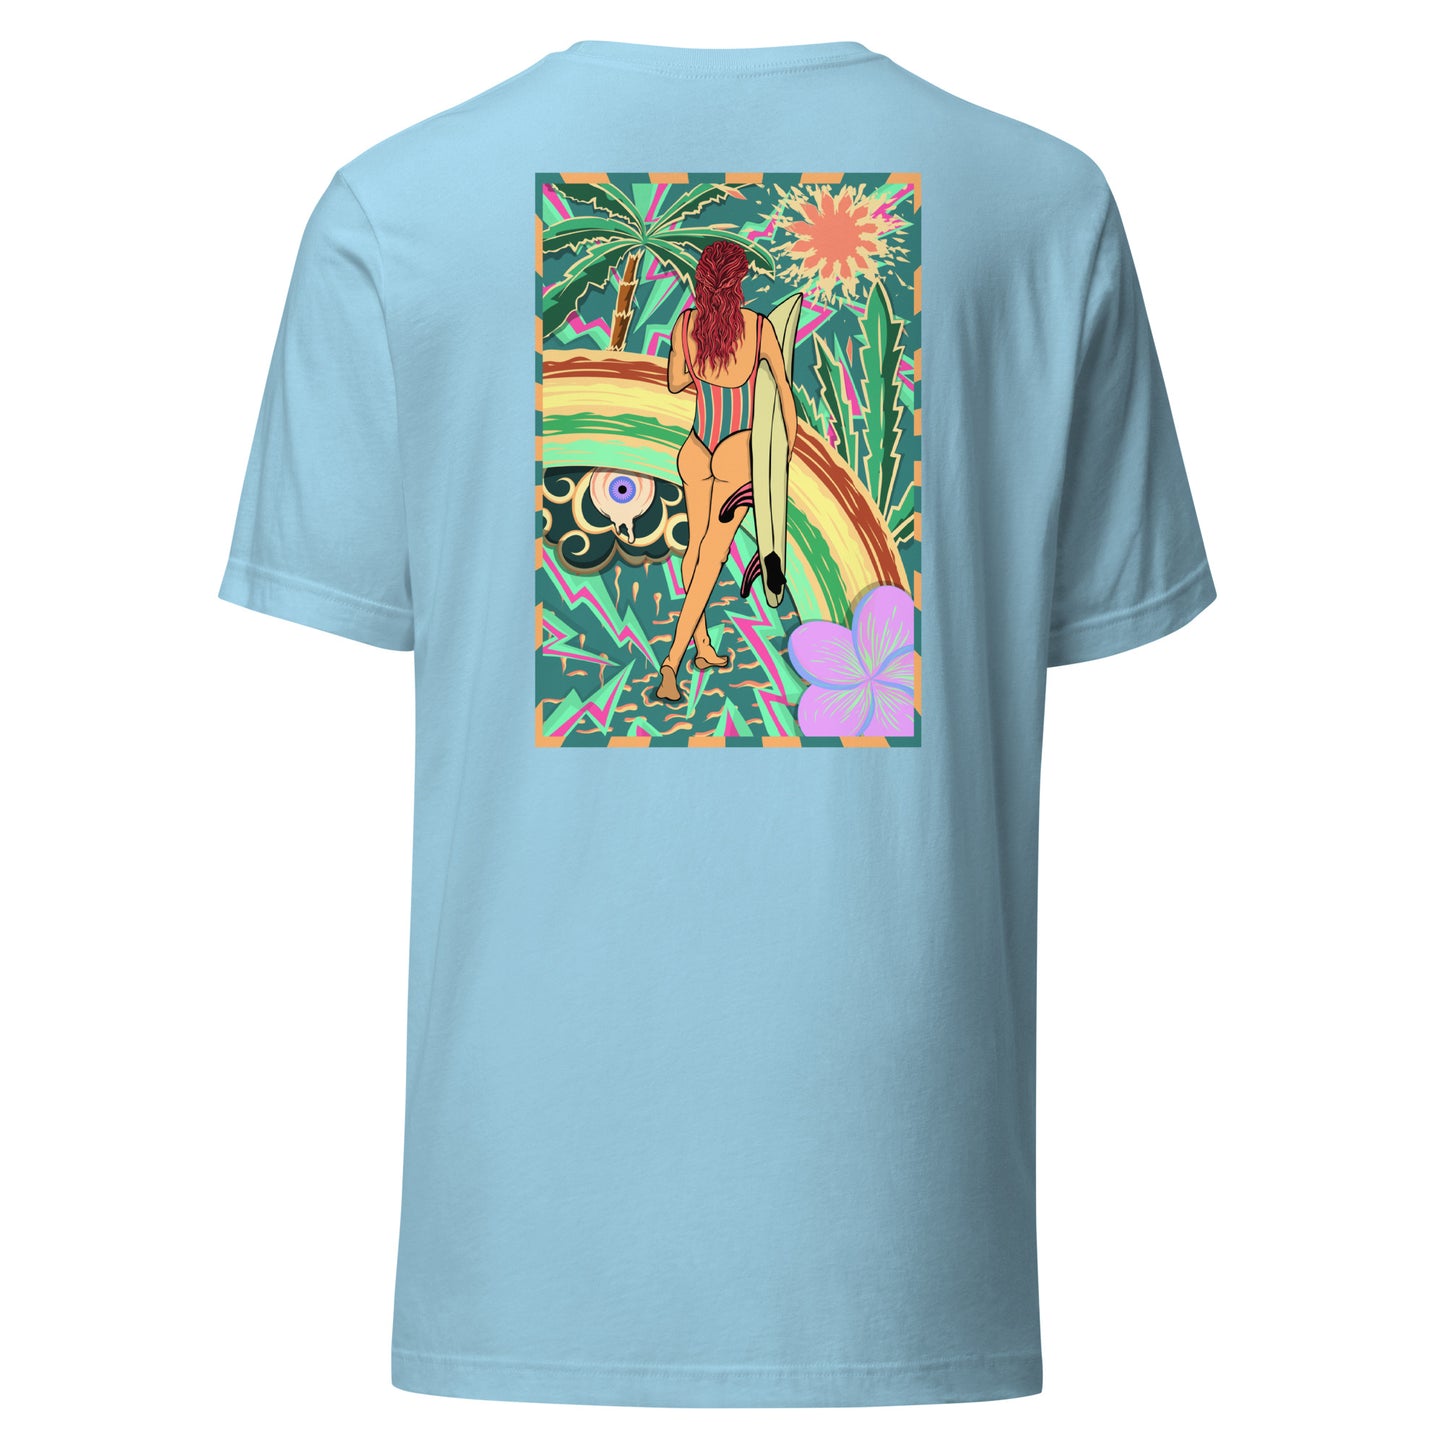 T-shirt surf vintage Walk Of Life surfeuse coloré hippie avec des palmier, fleur, arc en ciel et œil psychédélique. Tshirt dos bleu océan